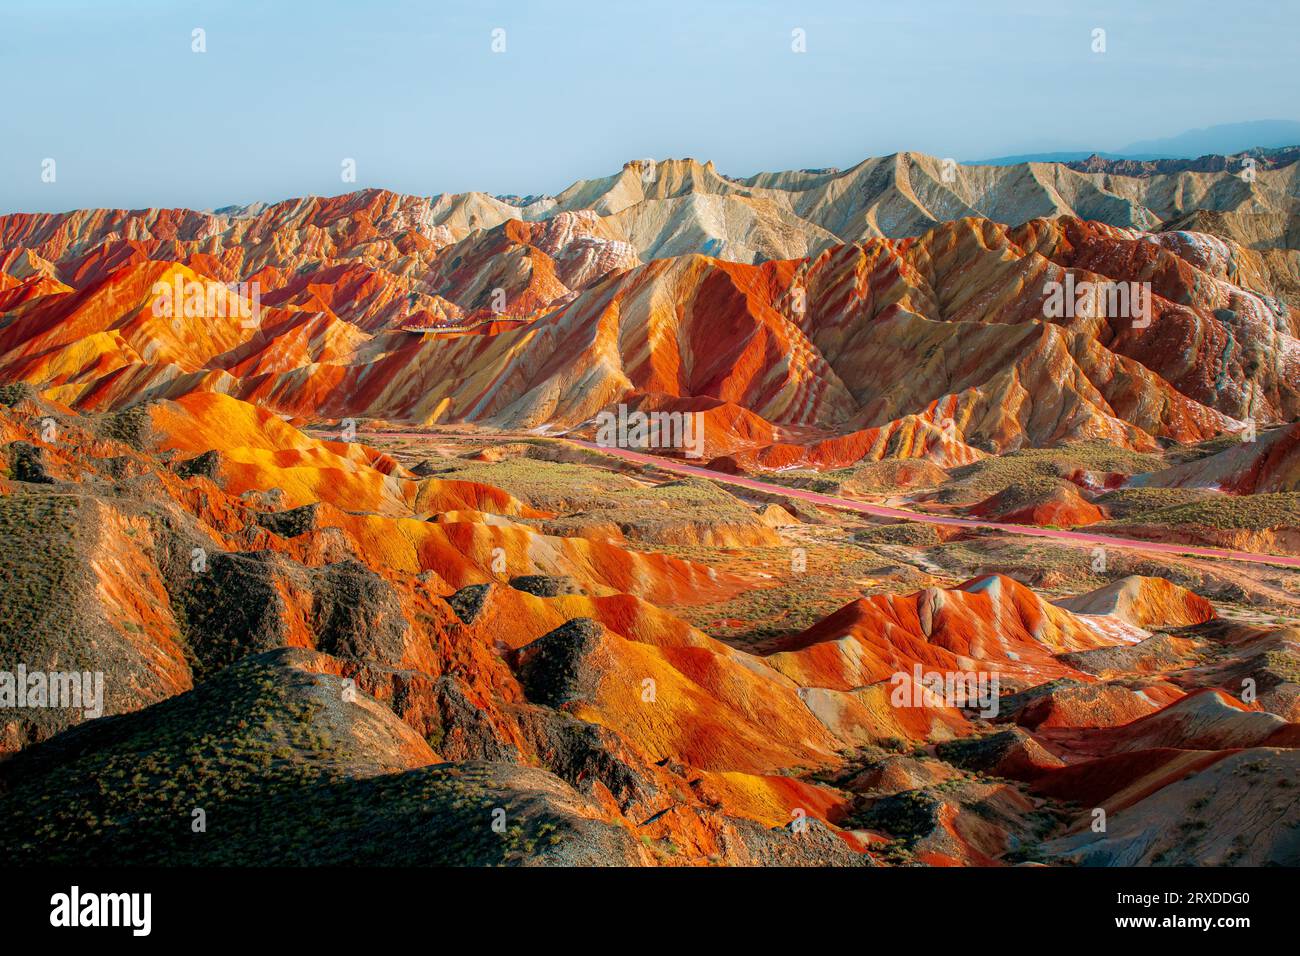 Panorama des Regenbogenberges im Geologischen Park Zhangye Danxia in China. Verschiedene Farben der Felsen, Hintergrundbild Stockfoto